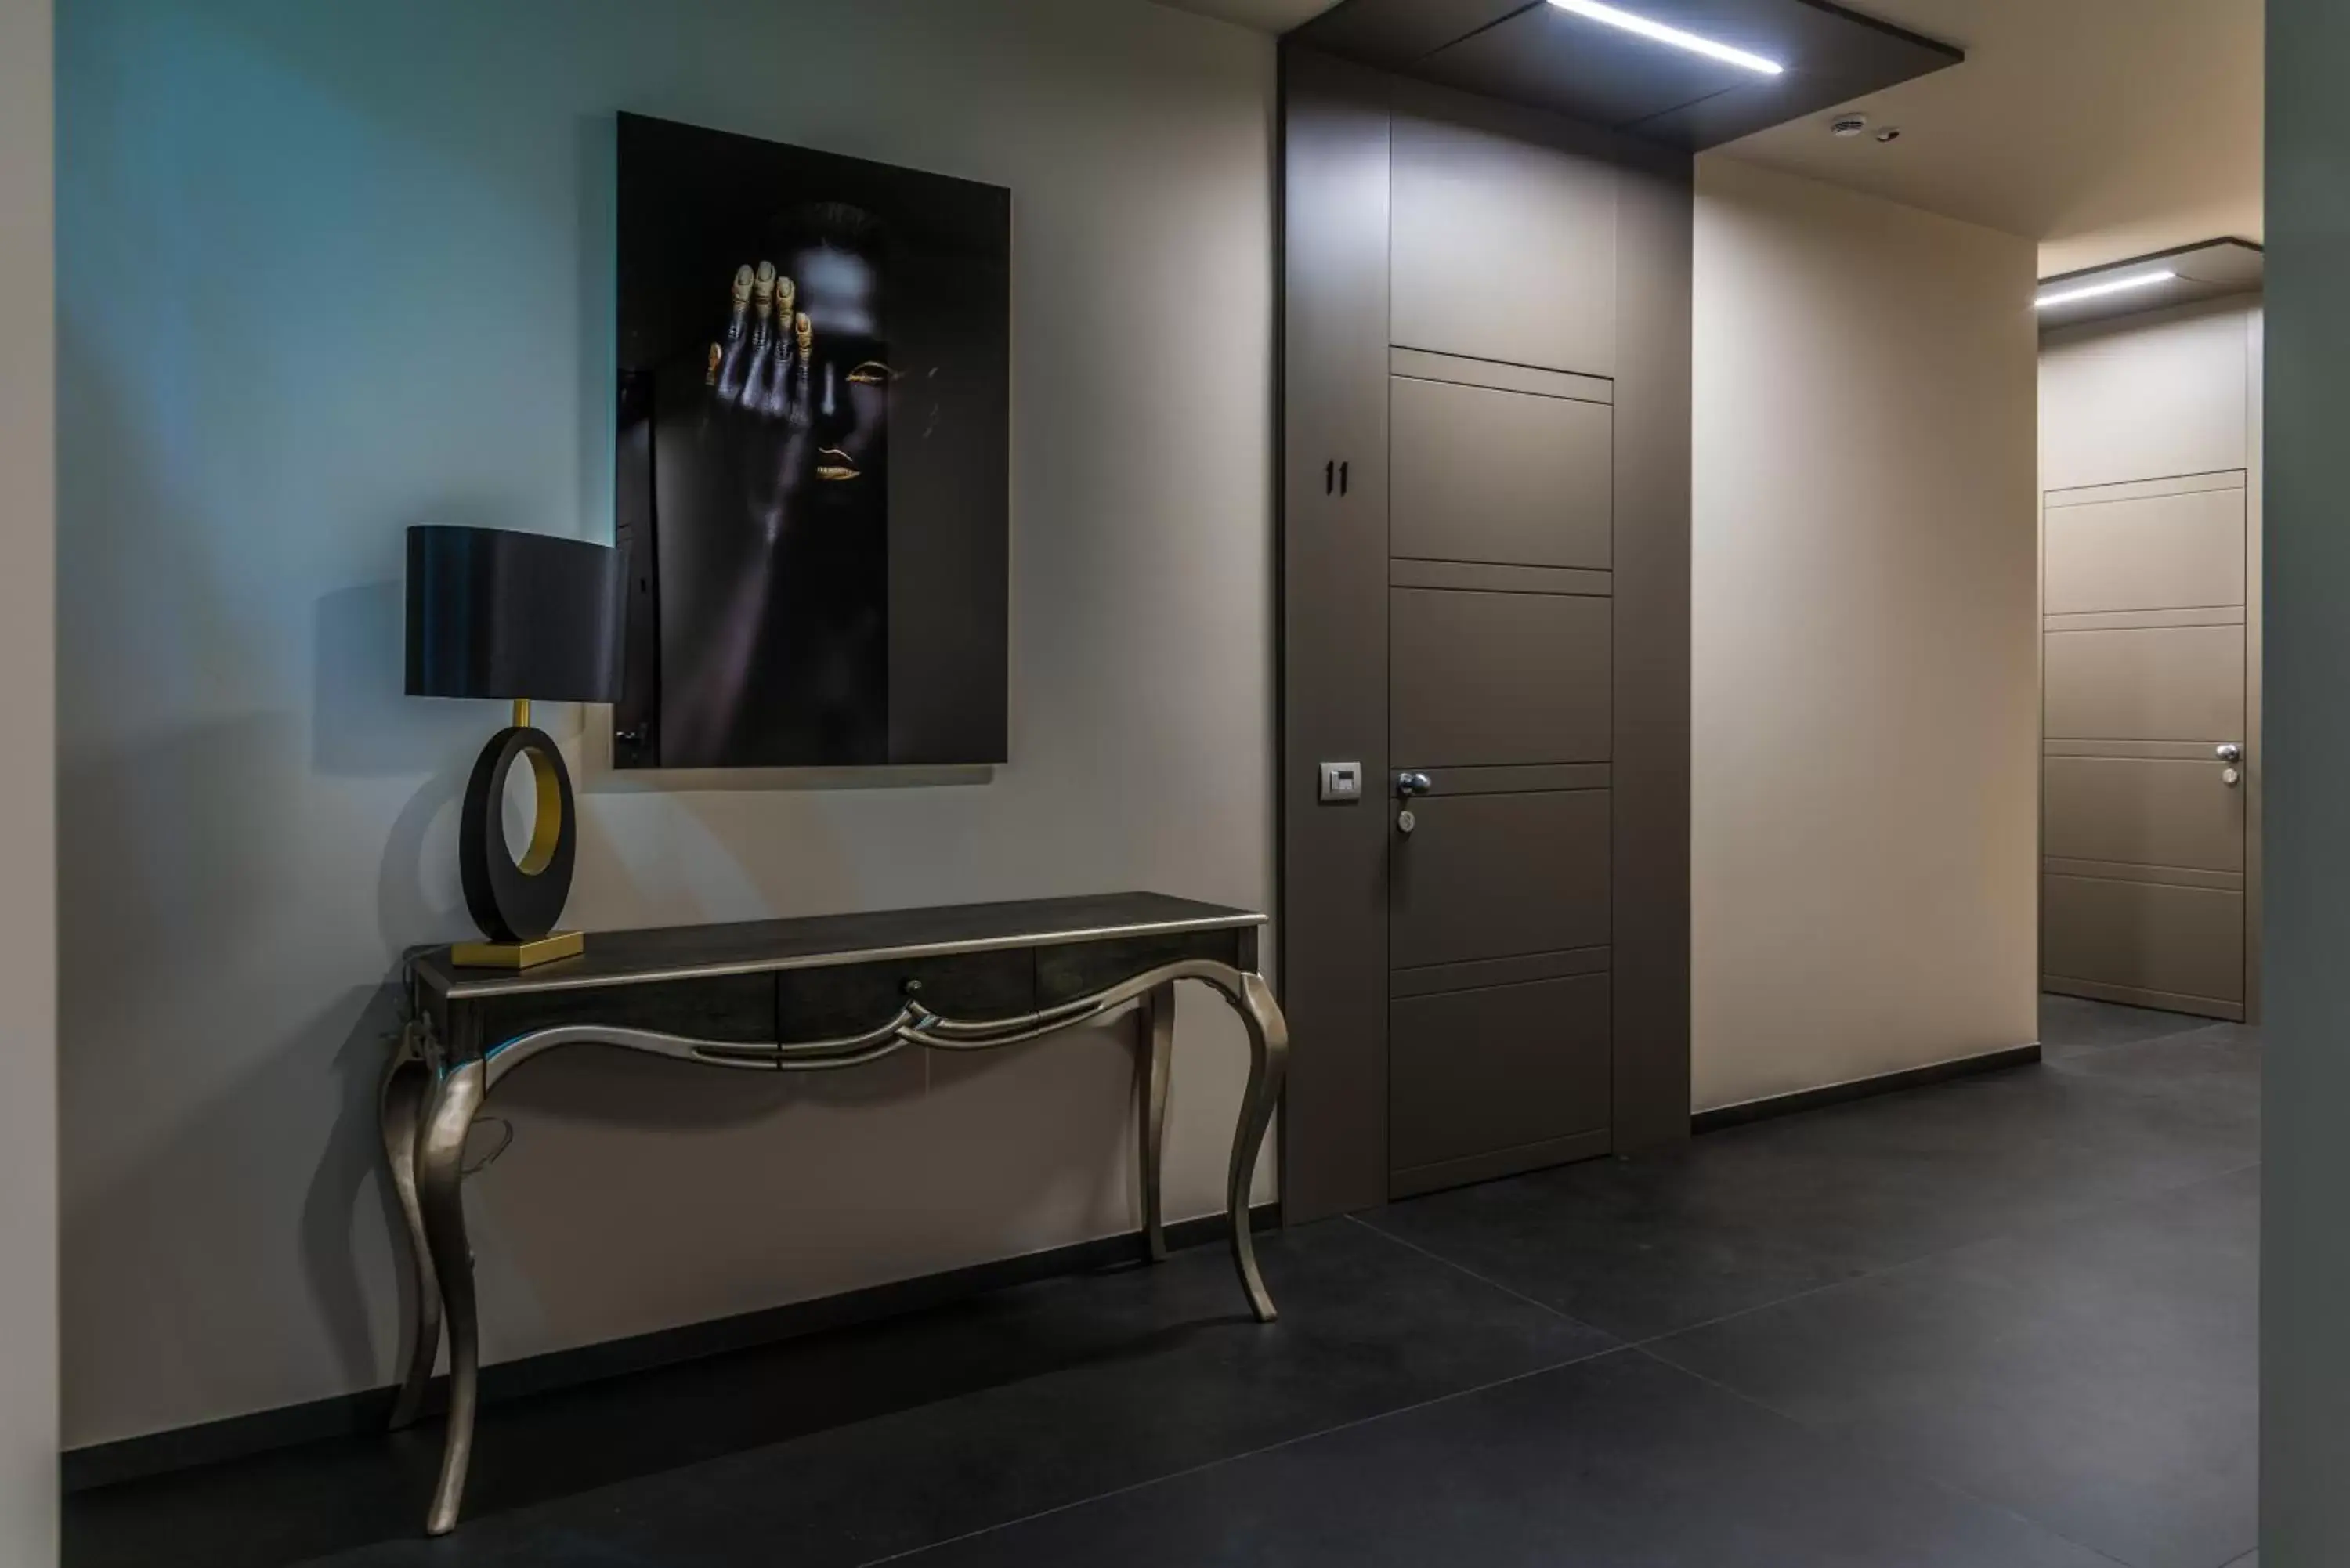 Lobby or reception, Bathroom in Hotel Matilde - Lifestyle Hotel